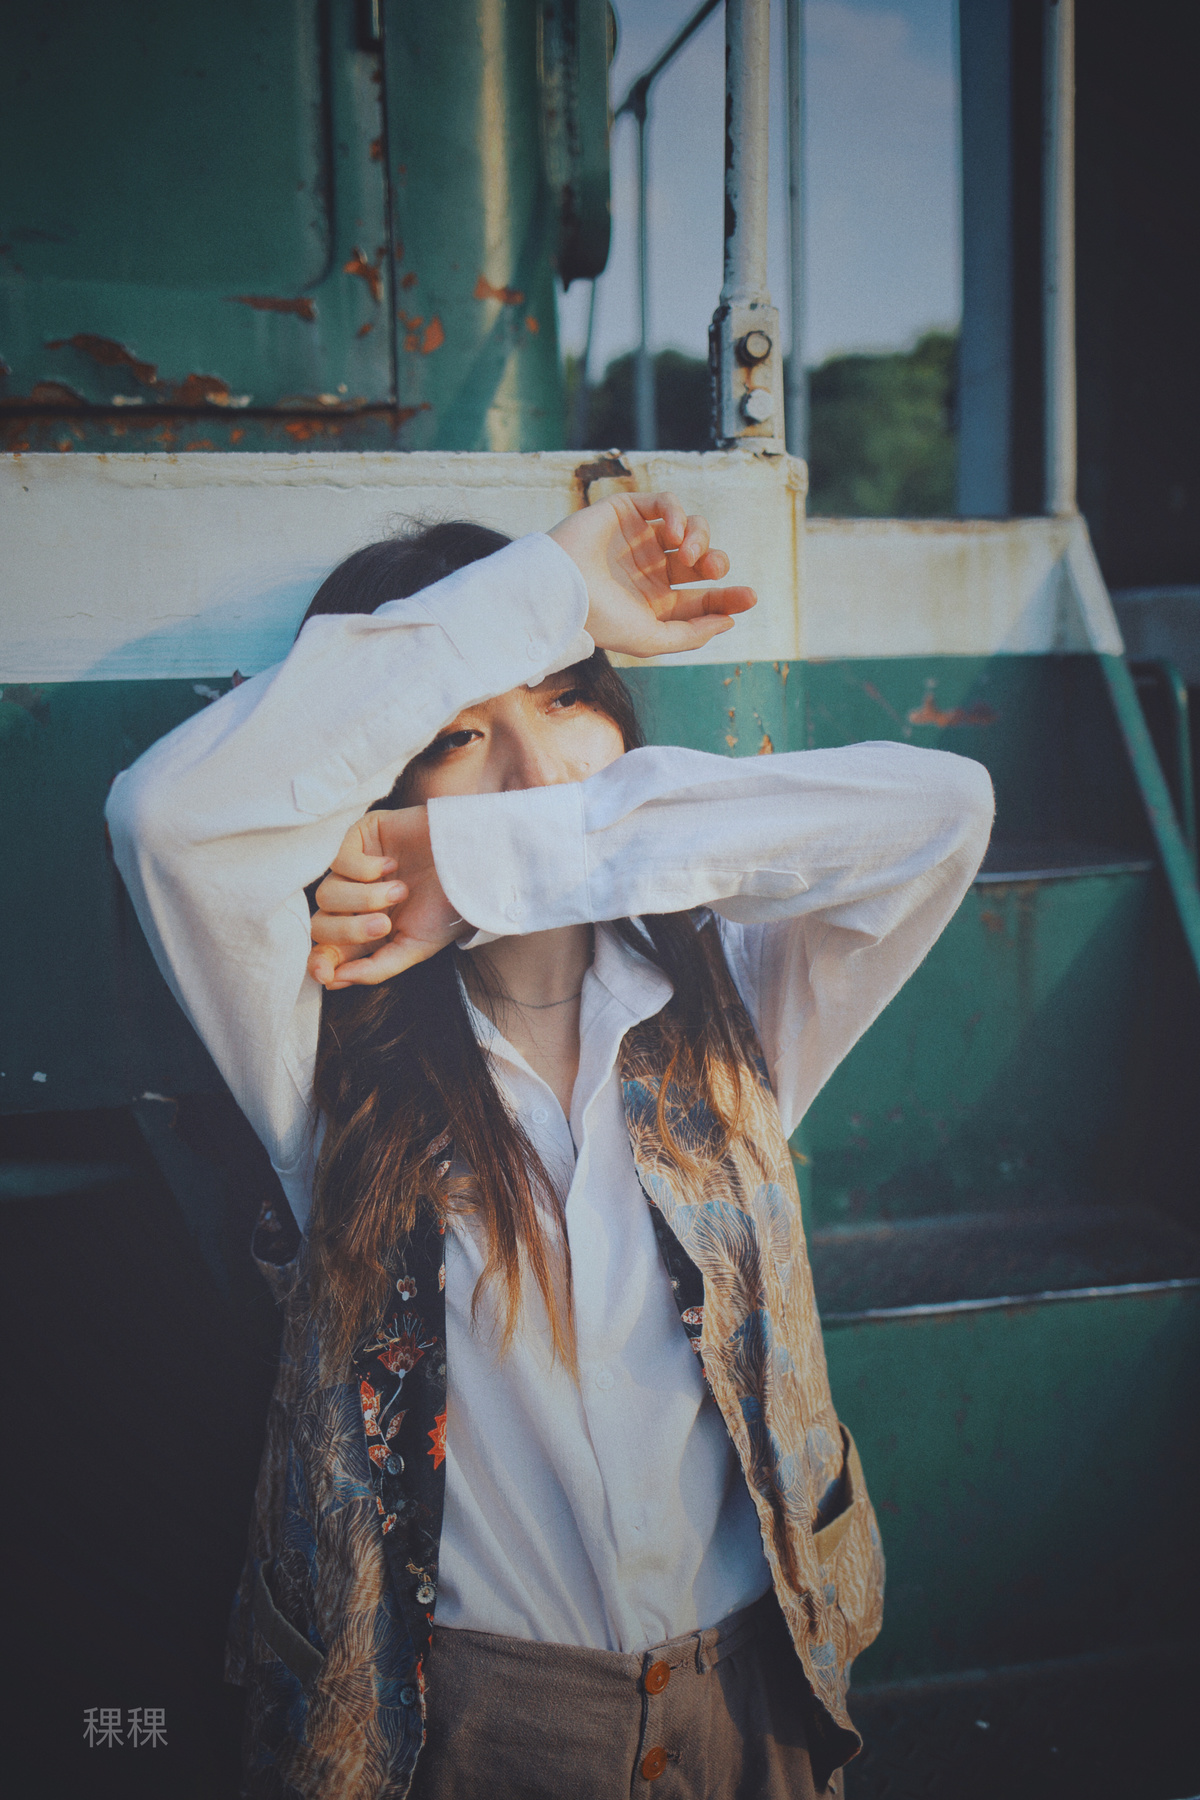 一位身穿白衬衫的年轻女子站在火车旁 双手捂着眼睛 掩面